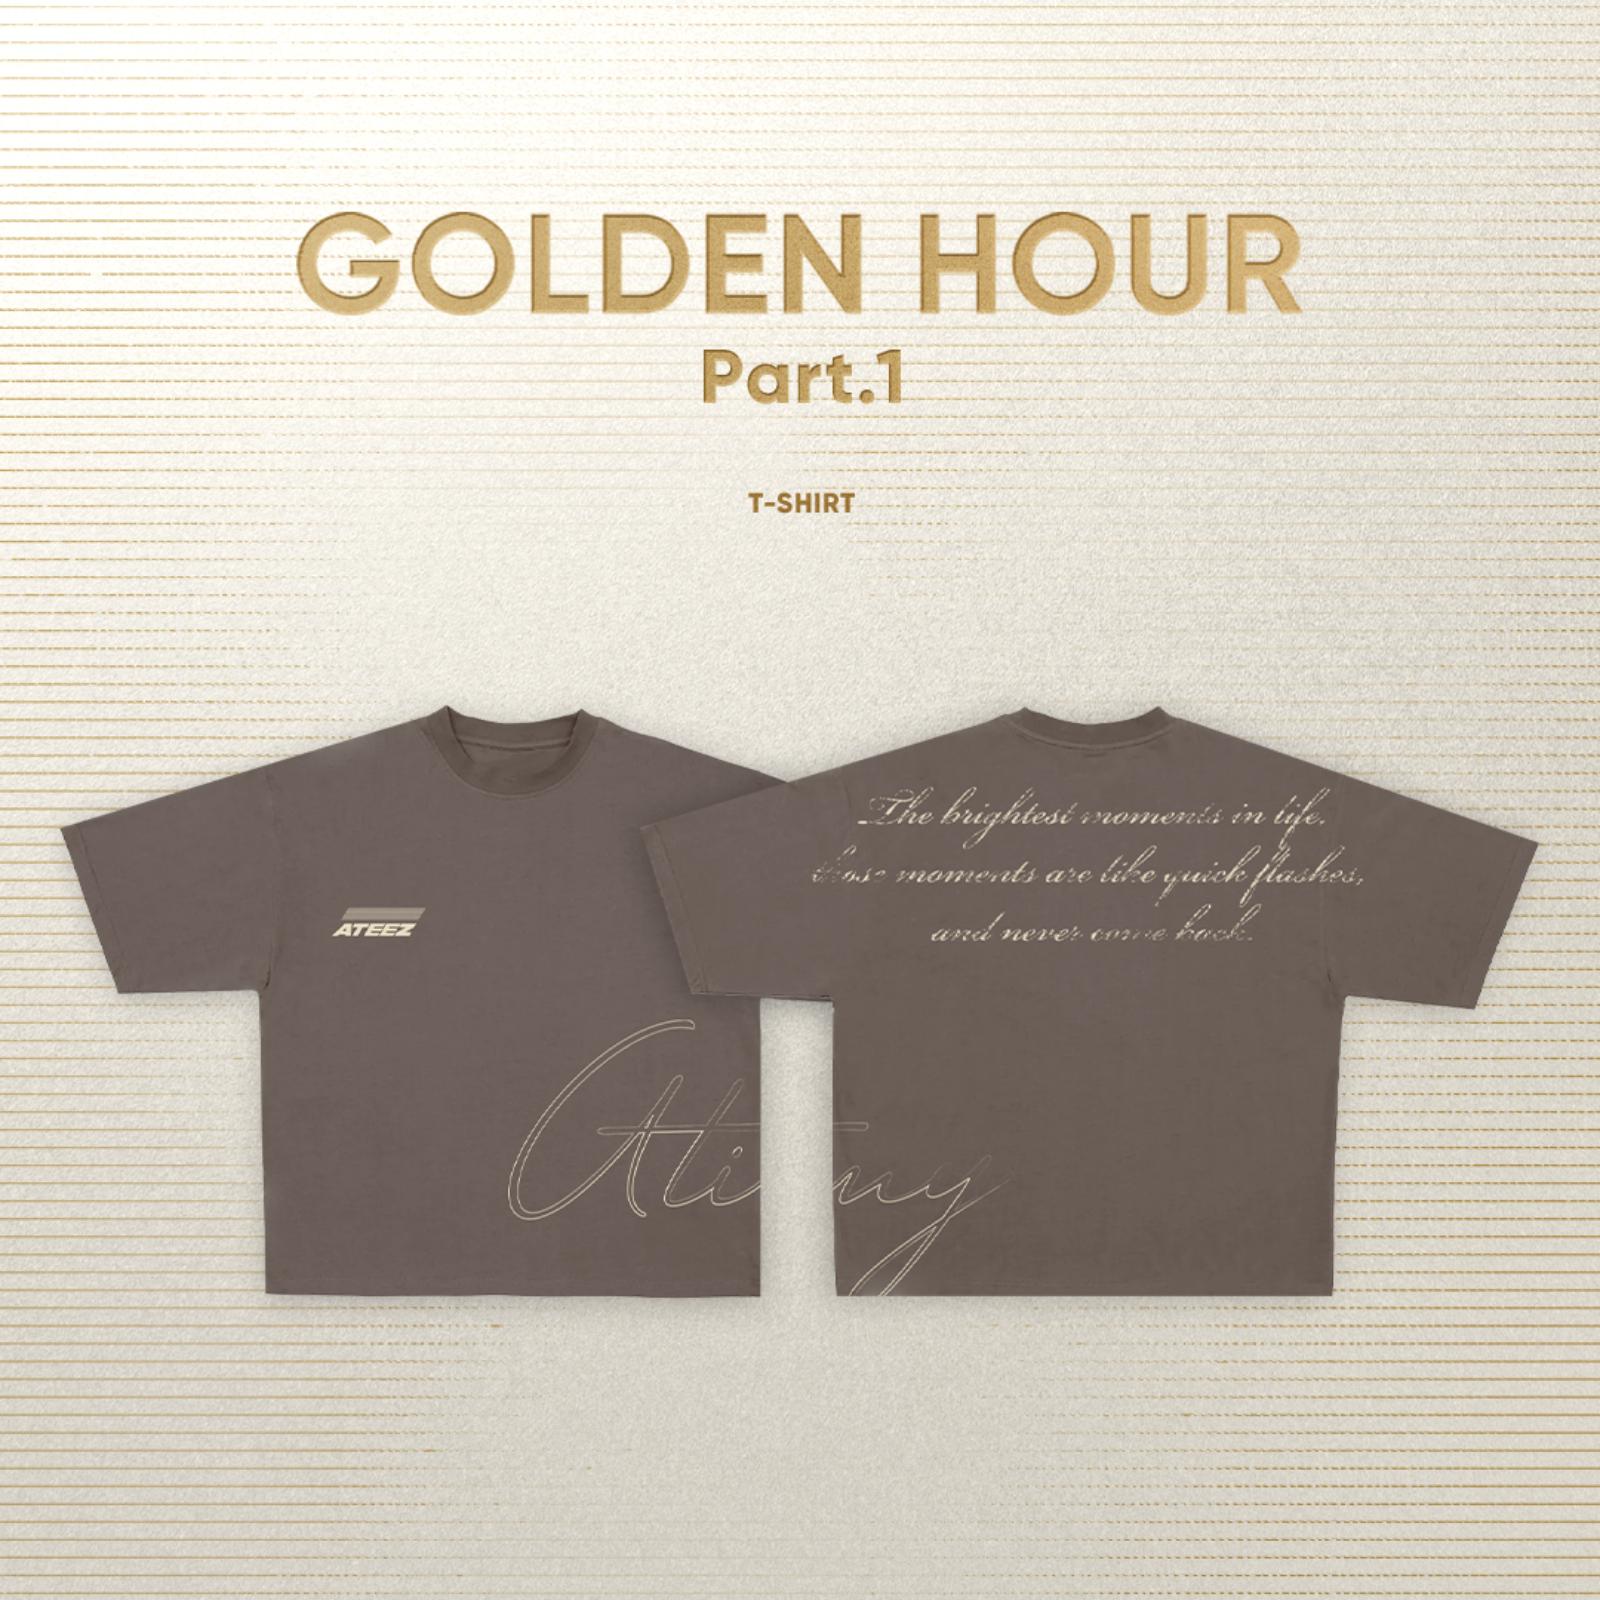 ATEEZ - GOLDEN HOUR T-shirt (GOLDEN HOUR Ver.)